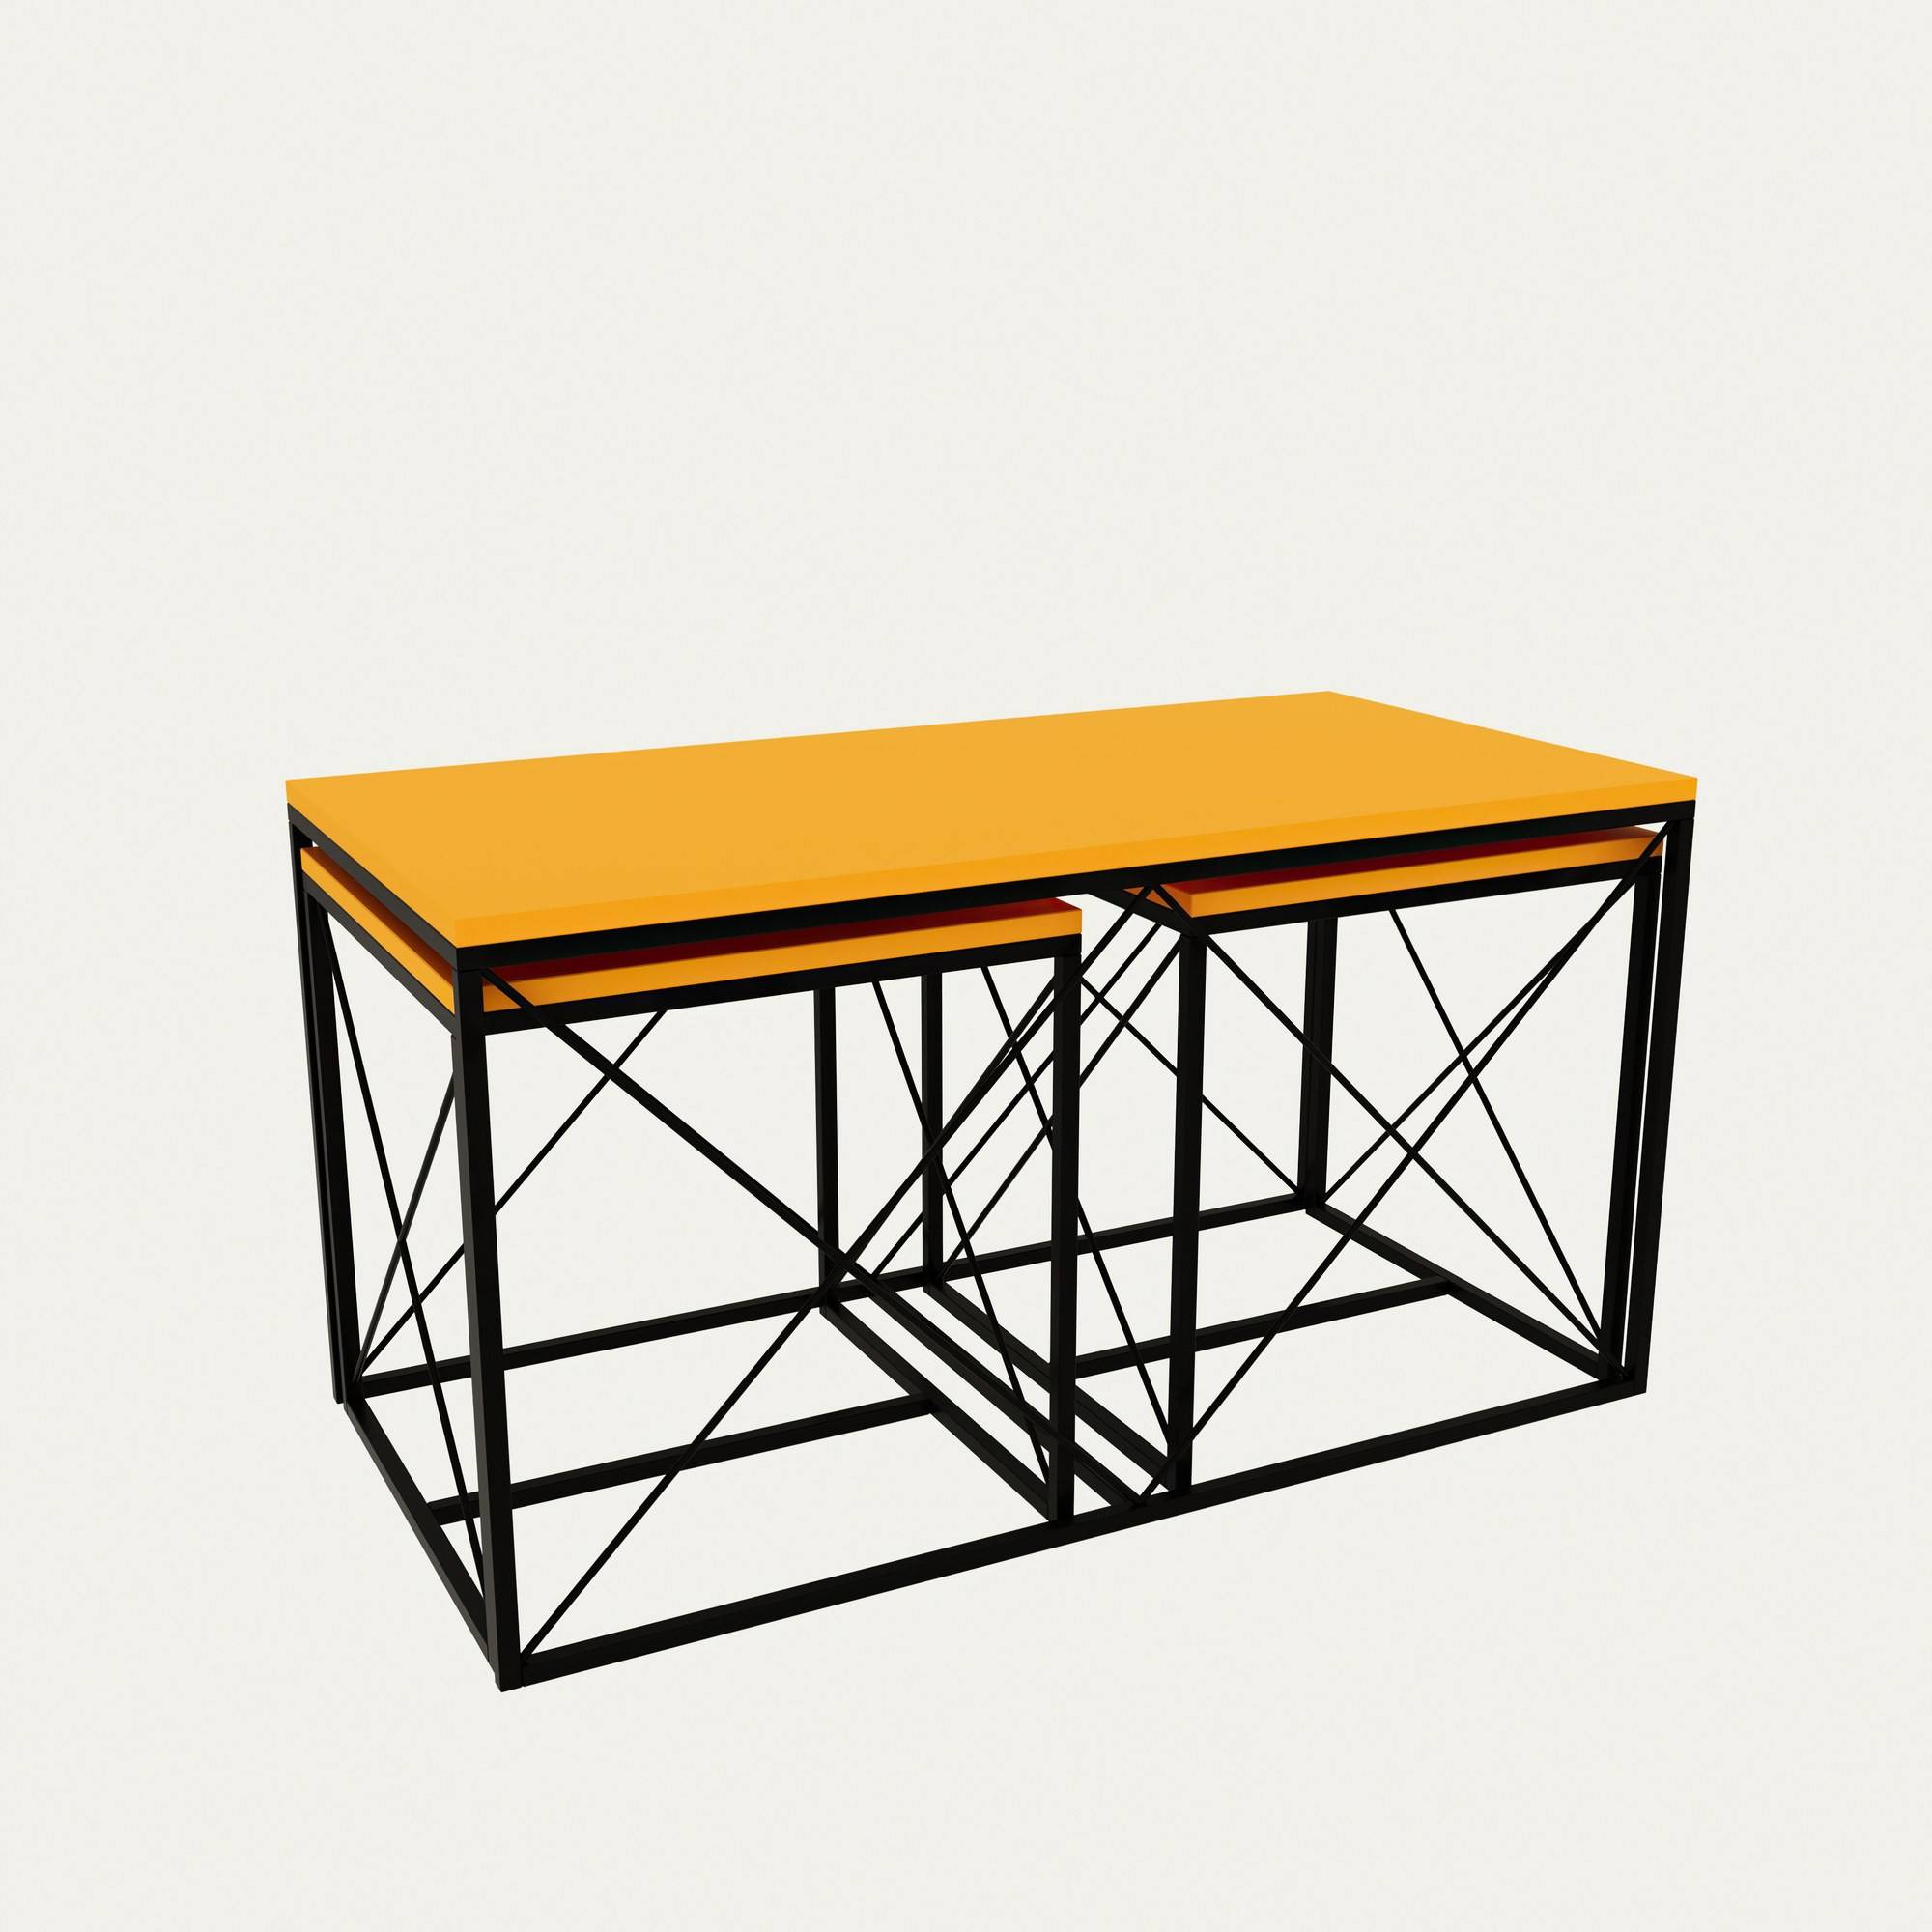 Juego de 3 mesas de centro nido Langkawa de estilo industrial en metal negro y madera amarilla